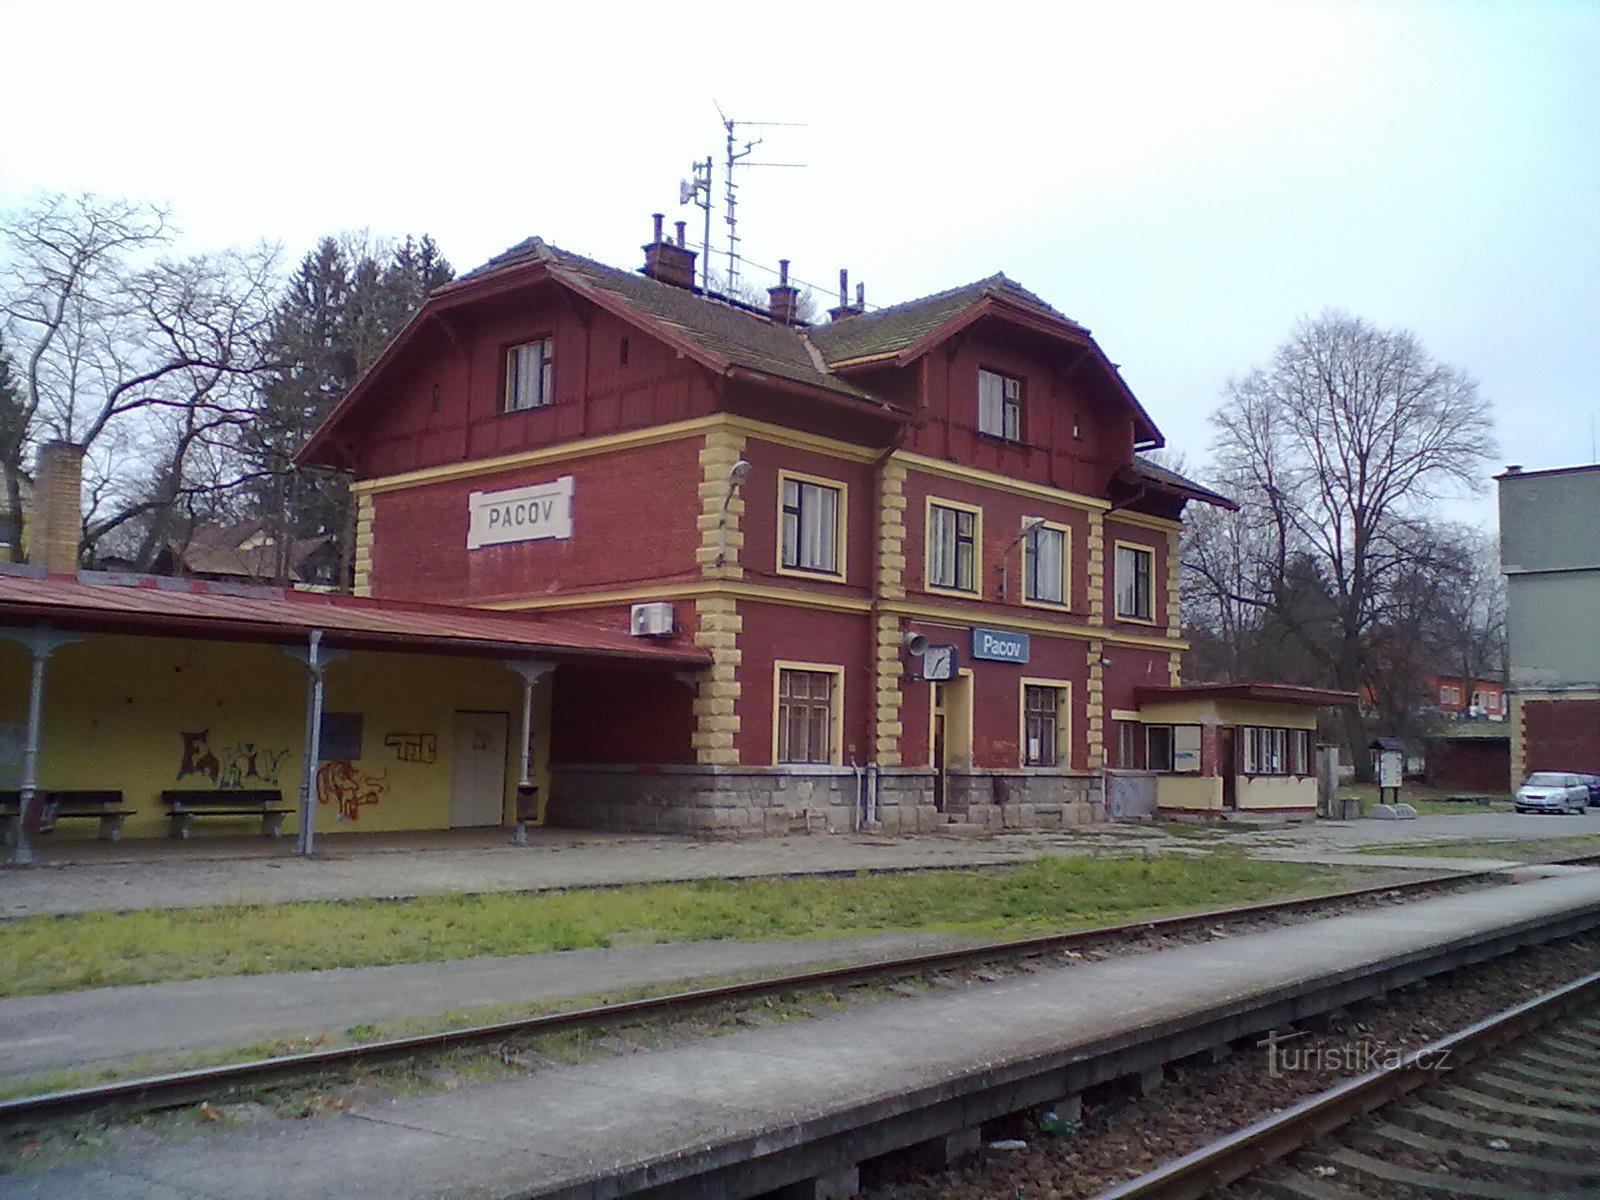 2. Station in Pacov, het begin en einde van onze wandeling.